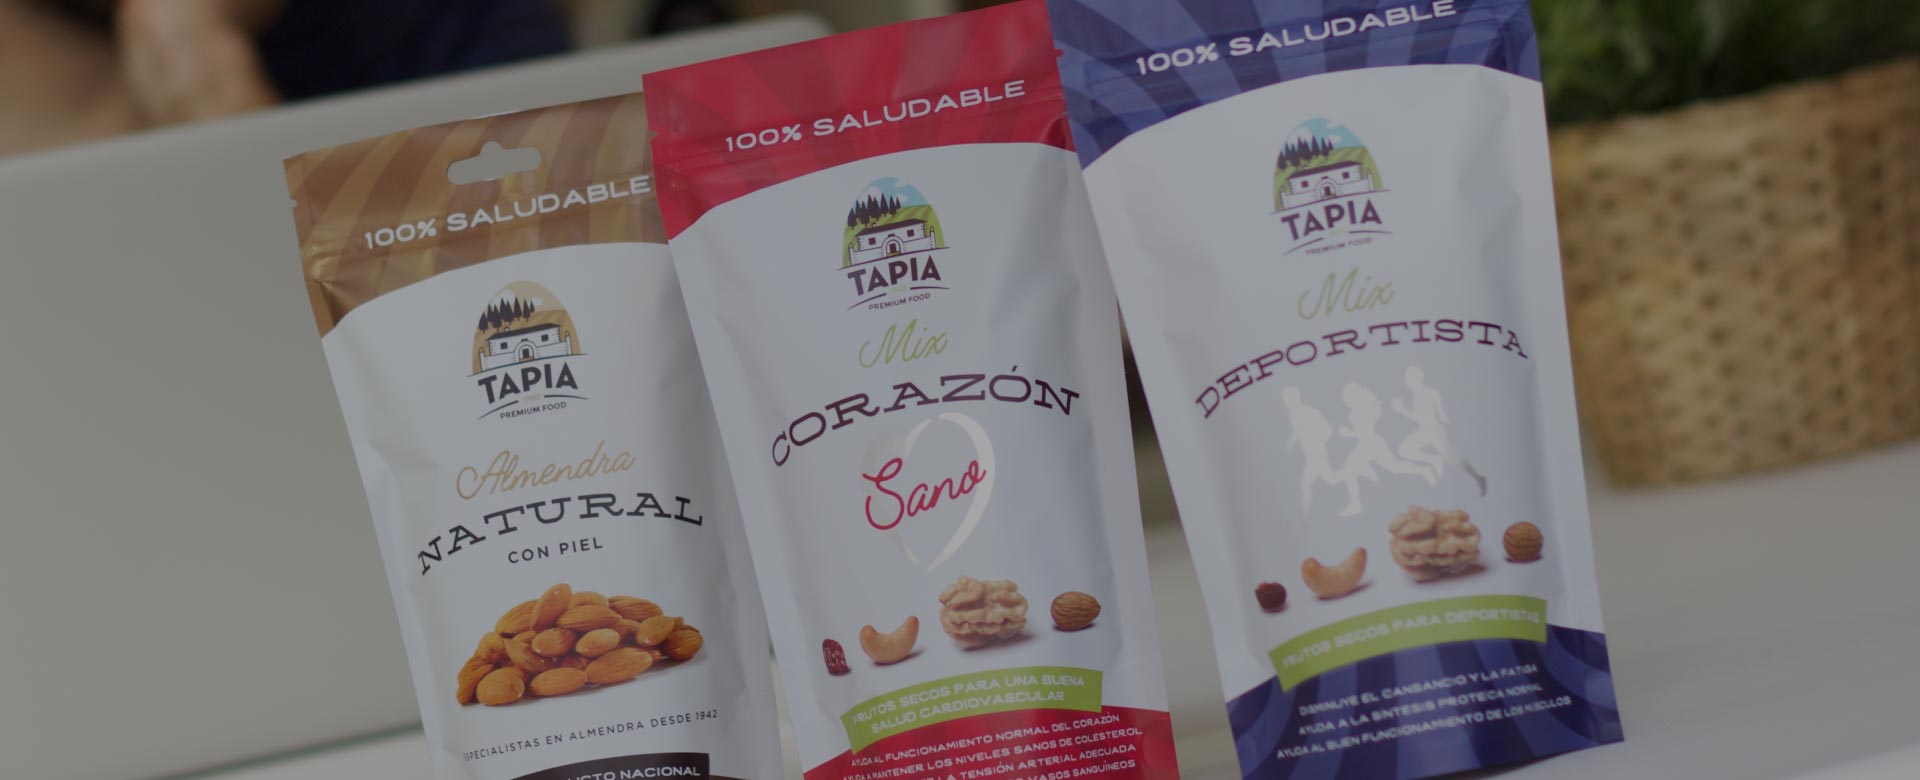 Tapia Food, Branding, diseño y packaging